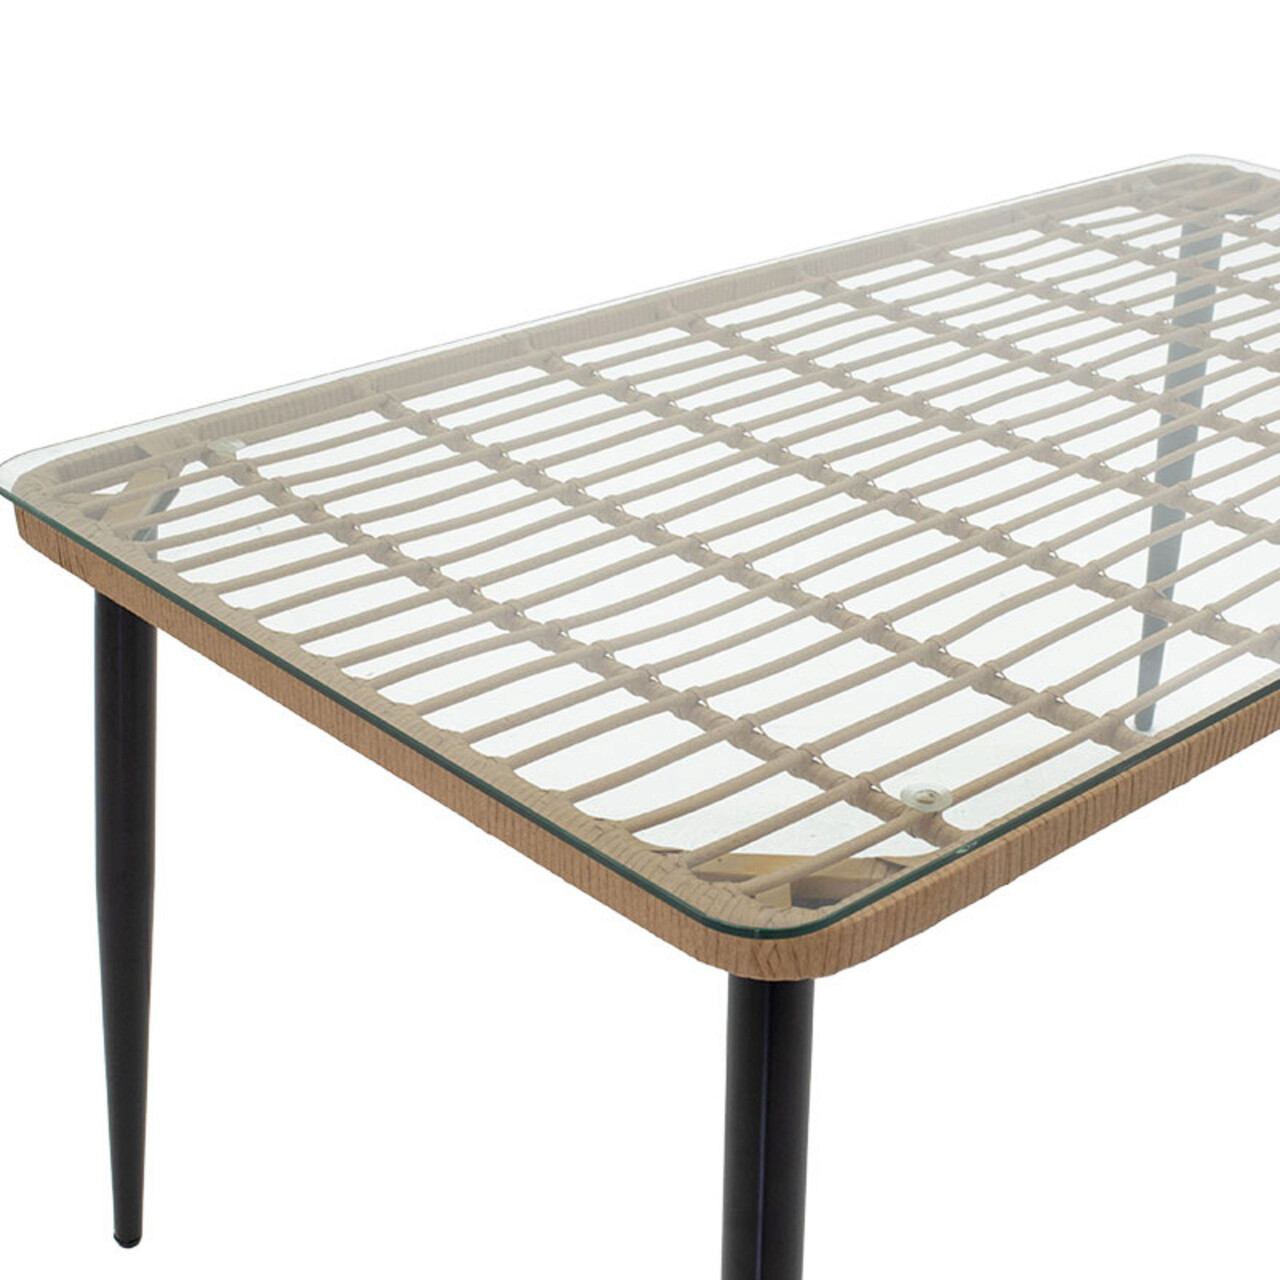 Masa pentru gradina Naoki, Pakoworld, 160x90x78 cm, metal/sticla/ratan sintetic, negru/natural